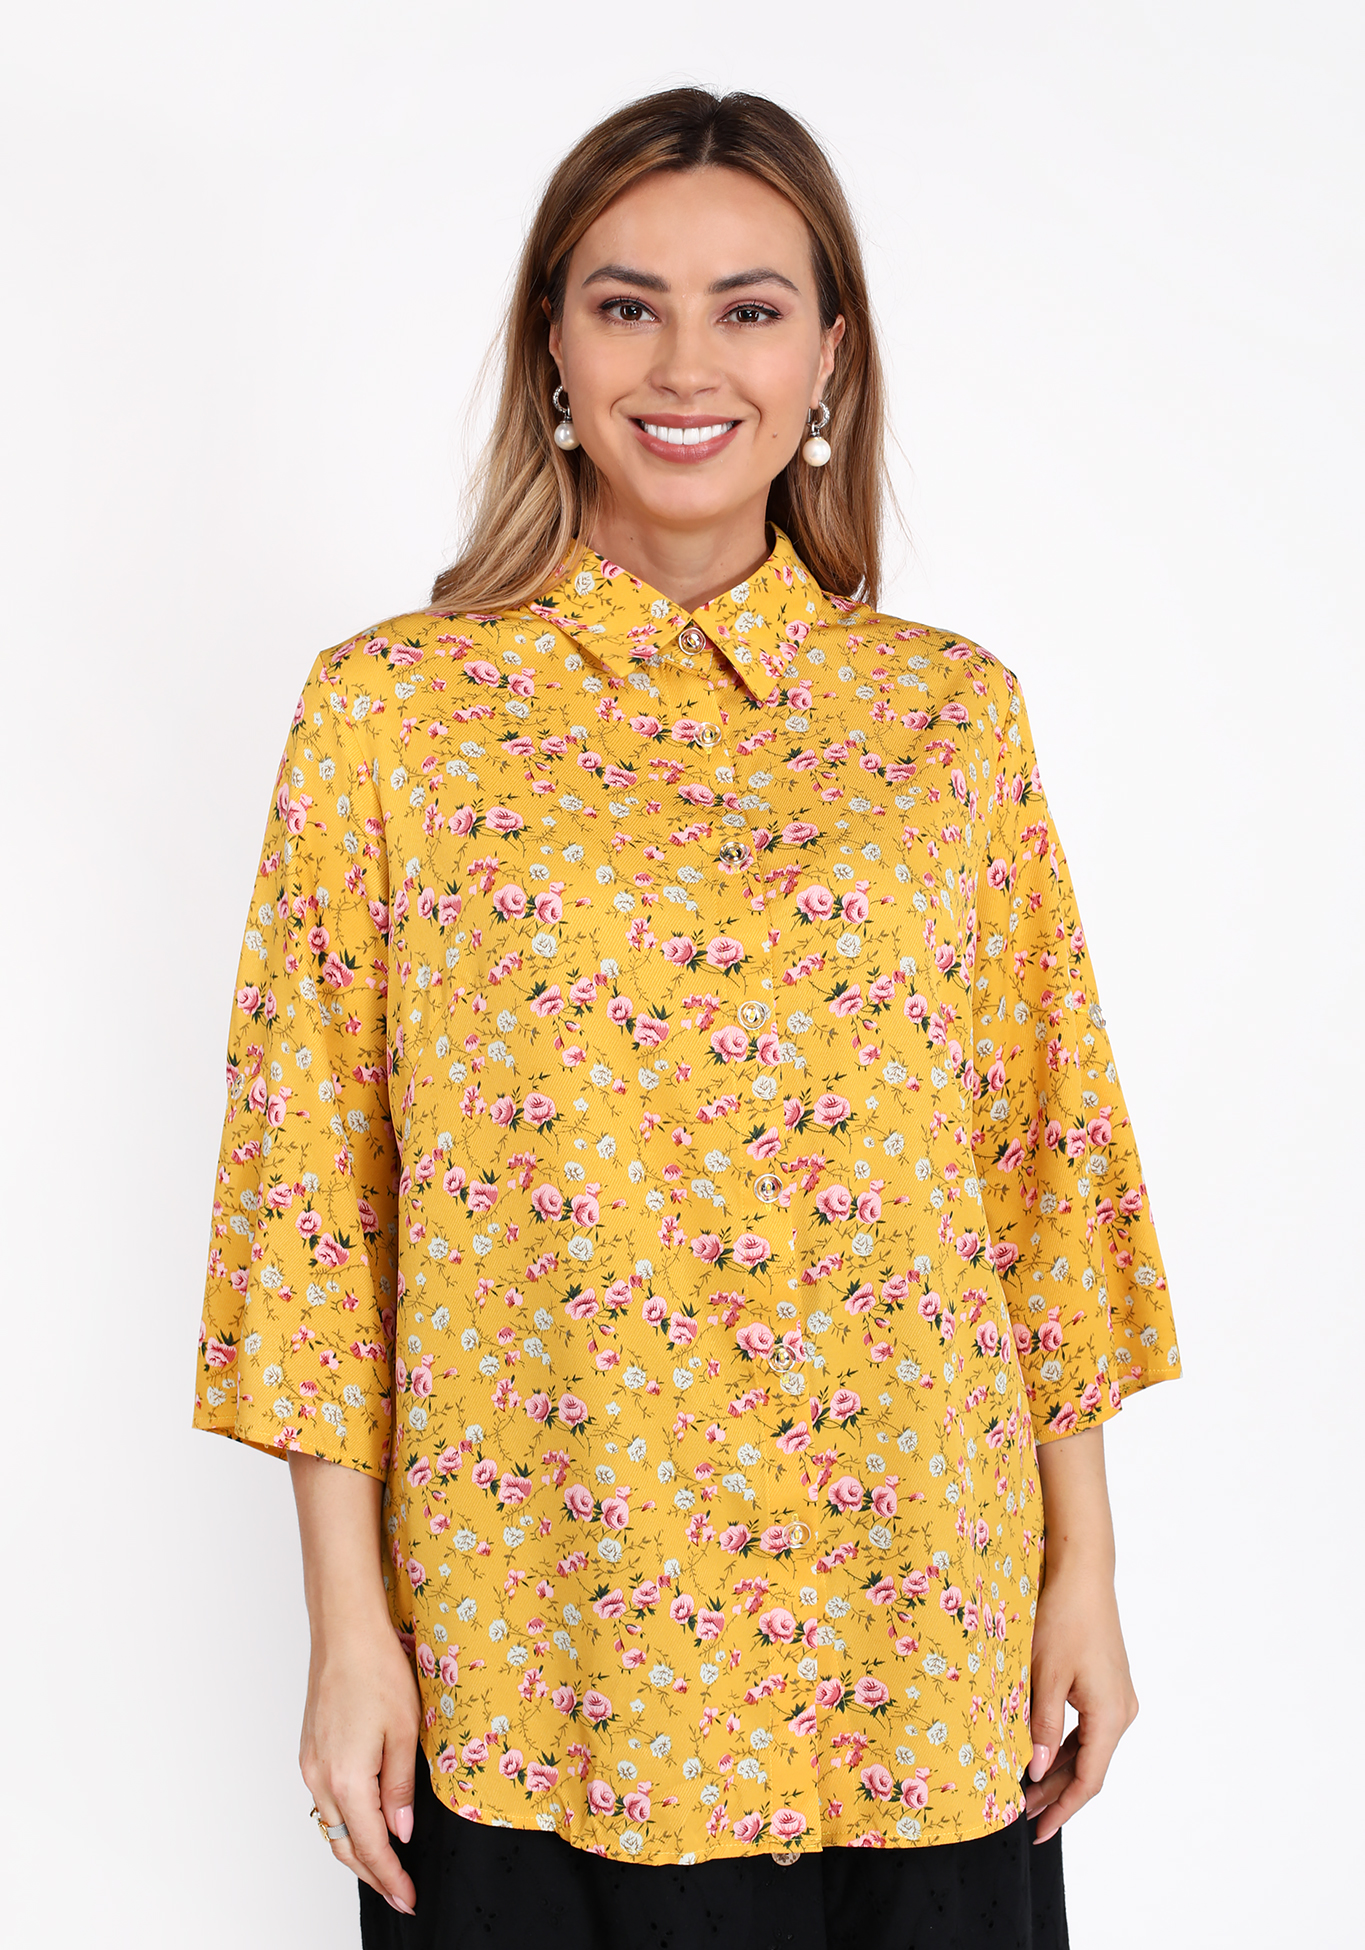 Рубашка на пуговицах с цветочным принтом Bianka Modeno, размер 50 свободная модель - фото 1